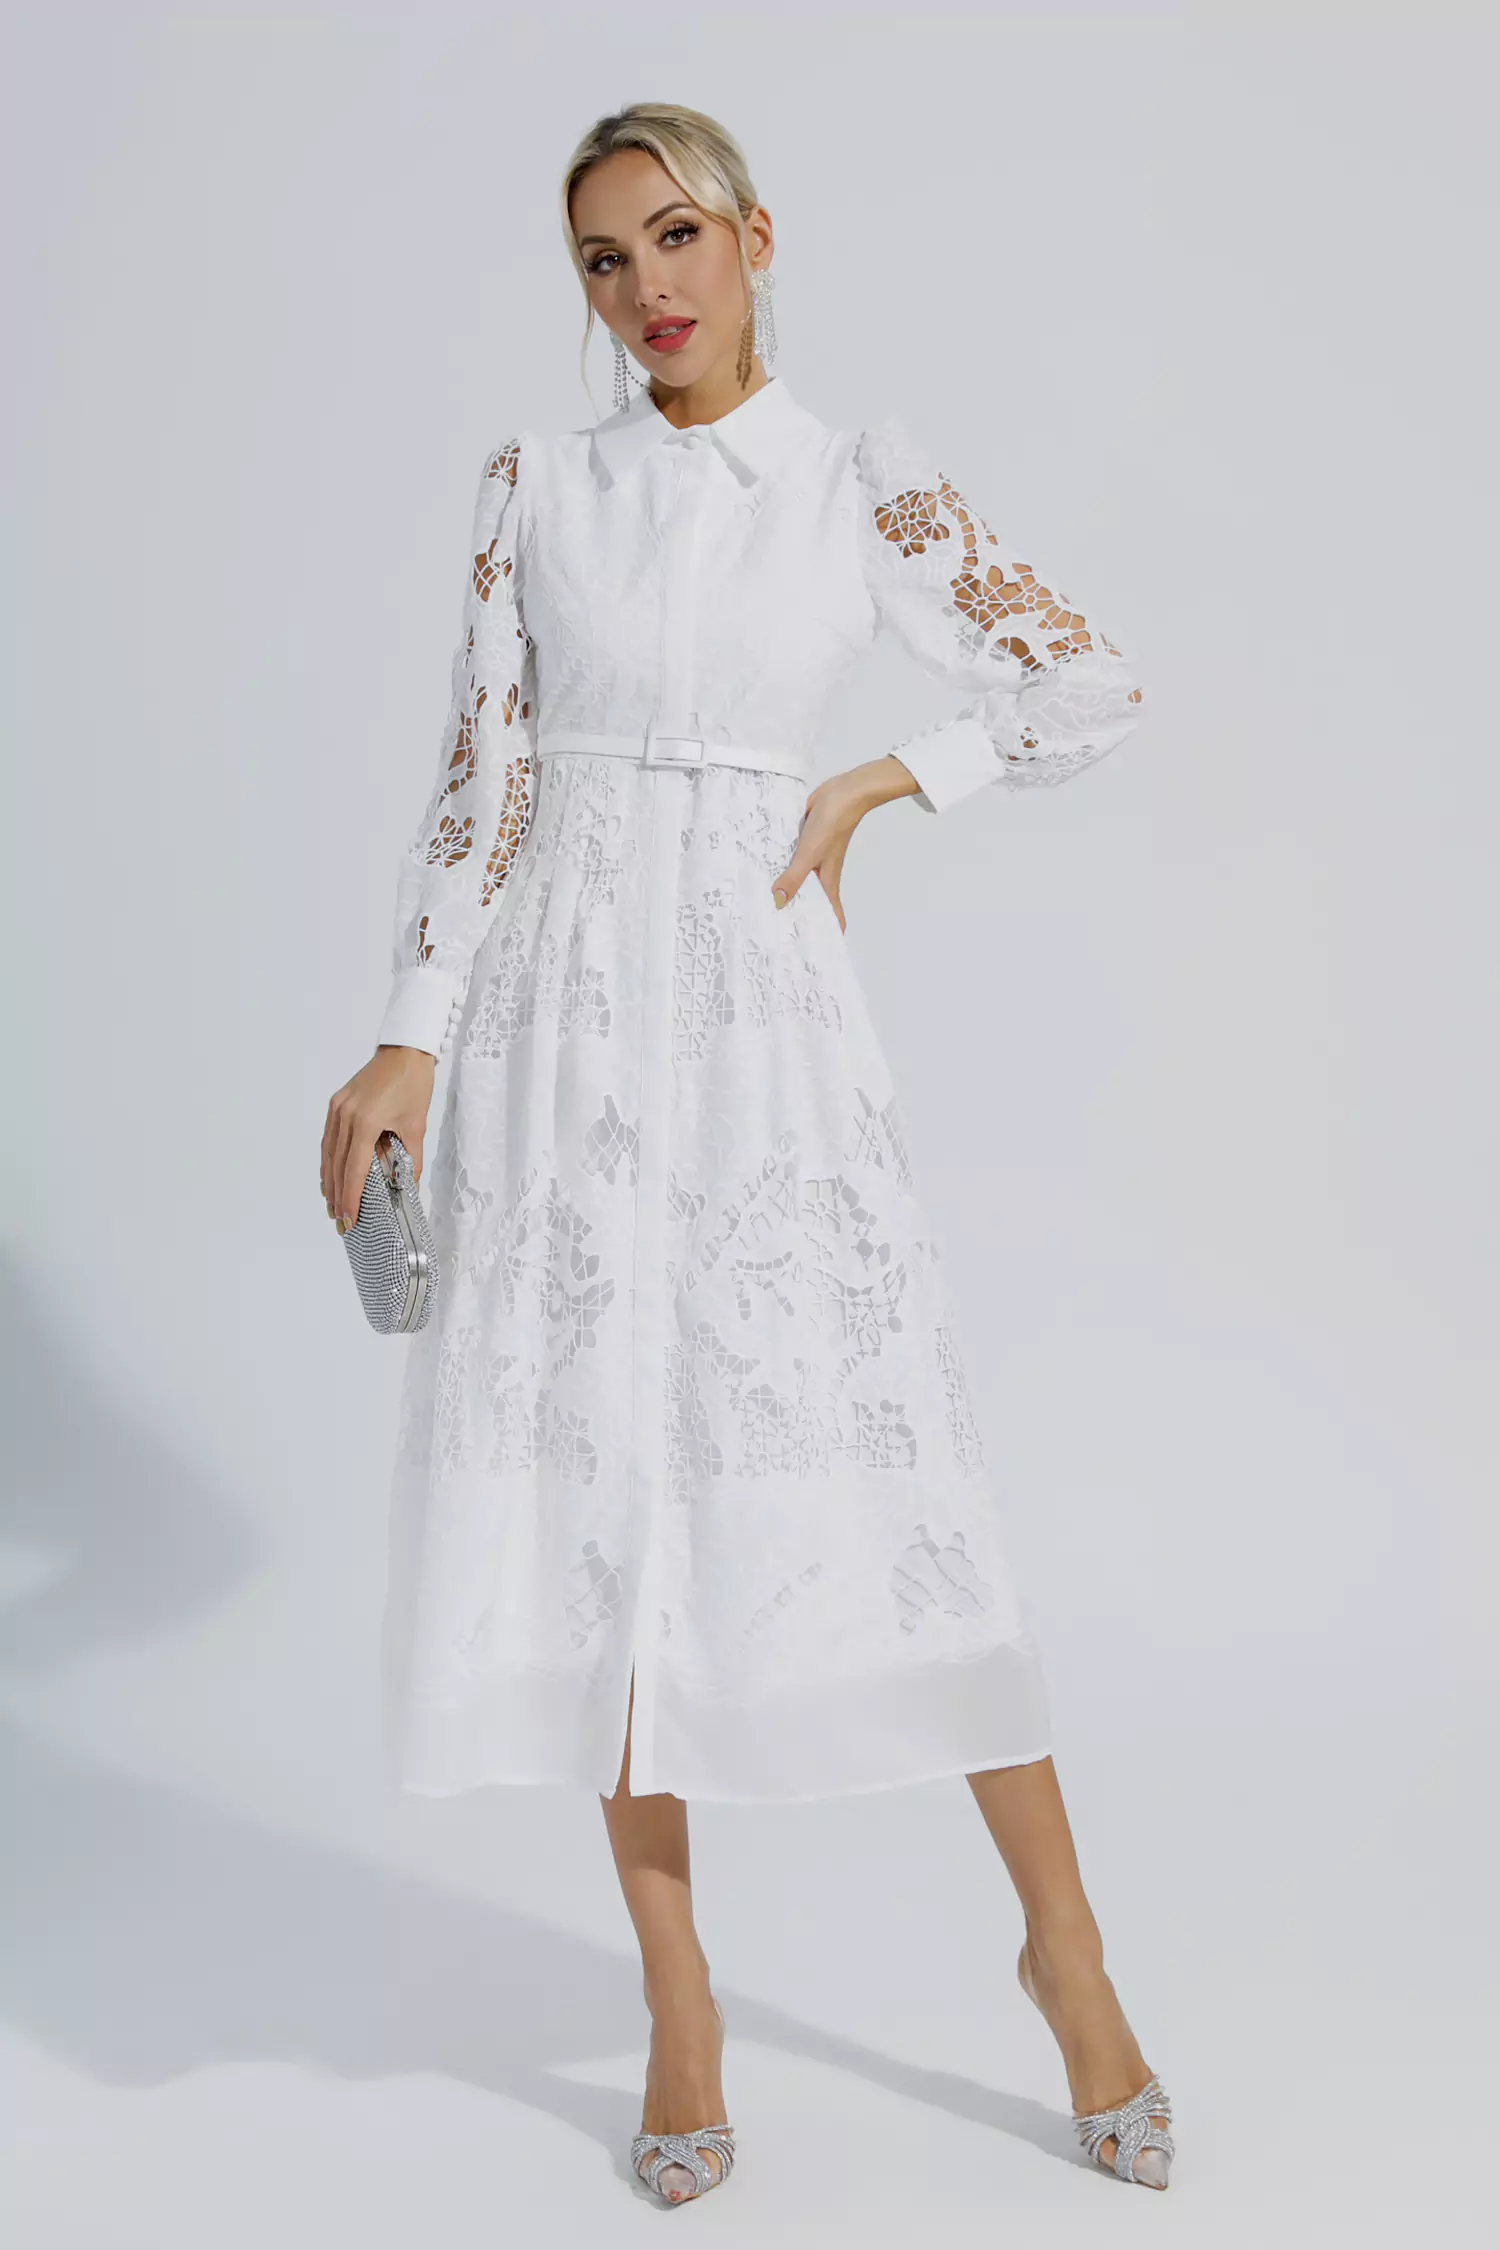 Colette White Lace Cutout Maxi Dress